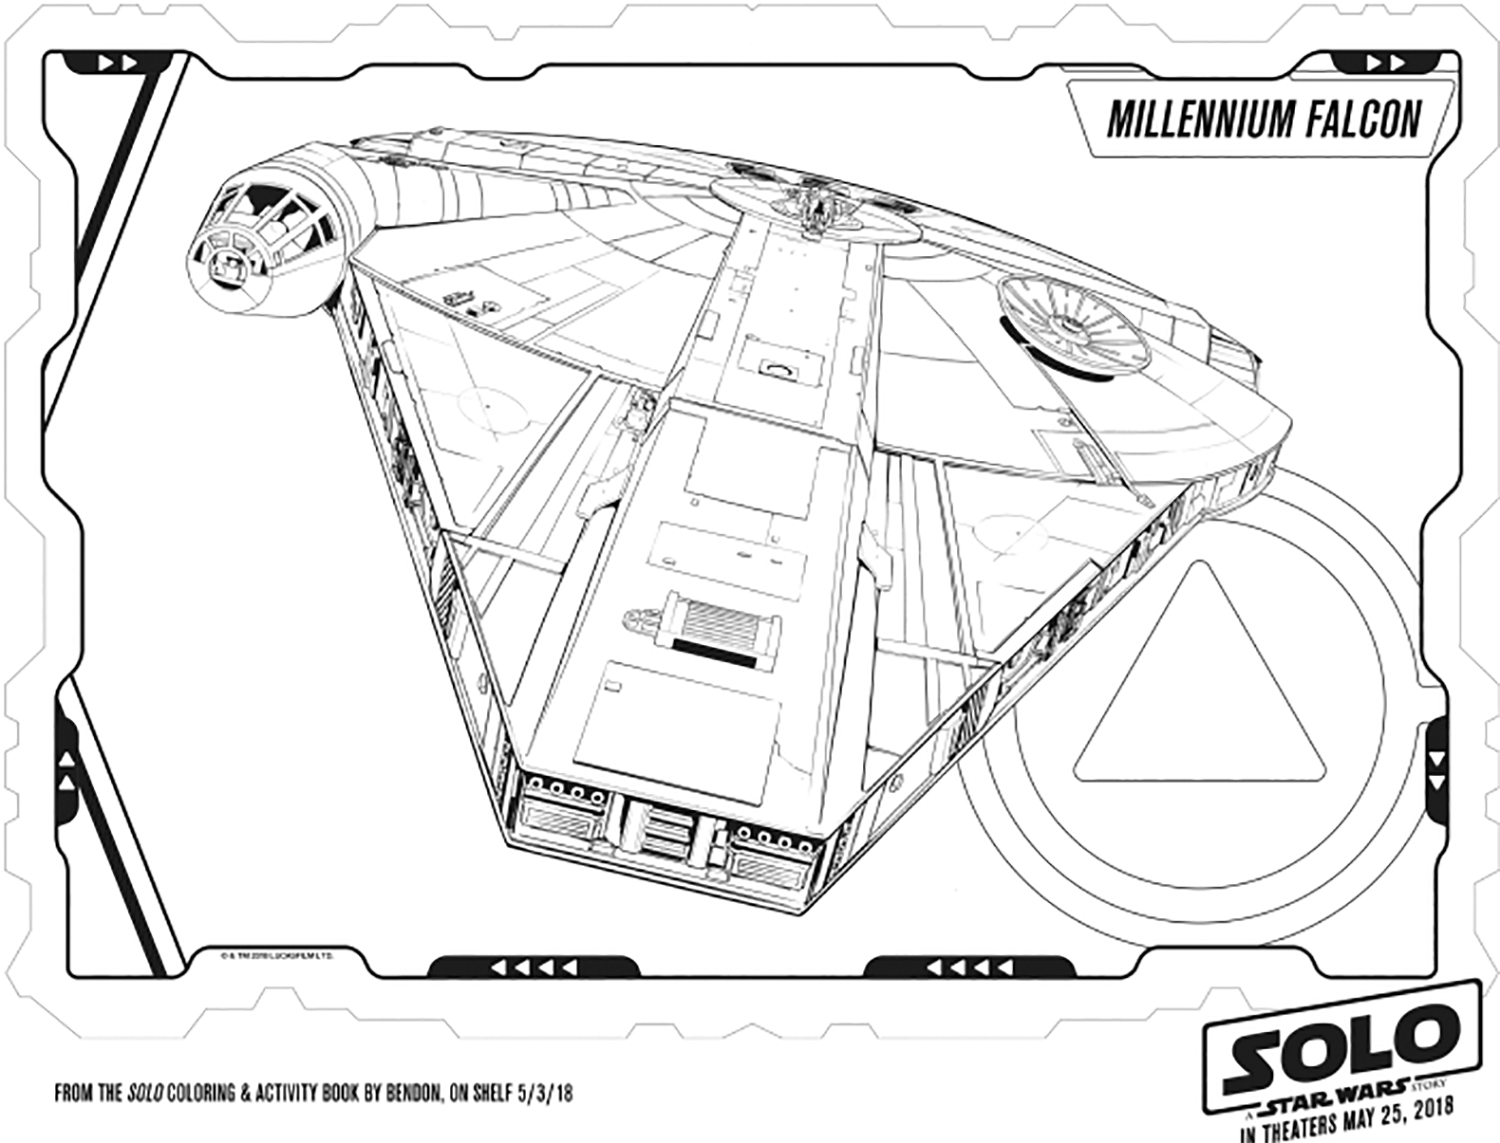 The Millennium Falcon in the Star Wars Solo movie